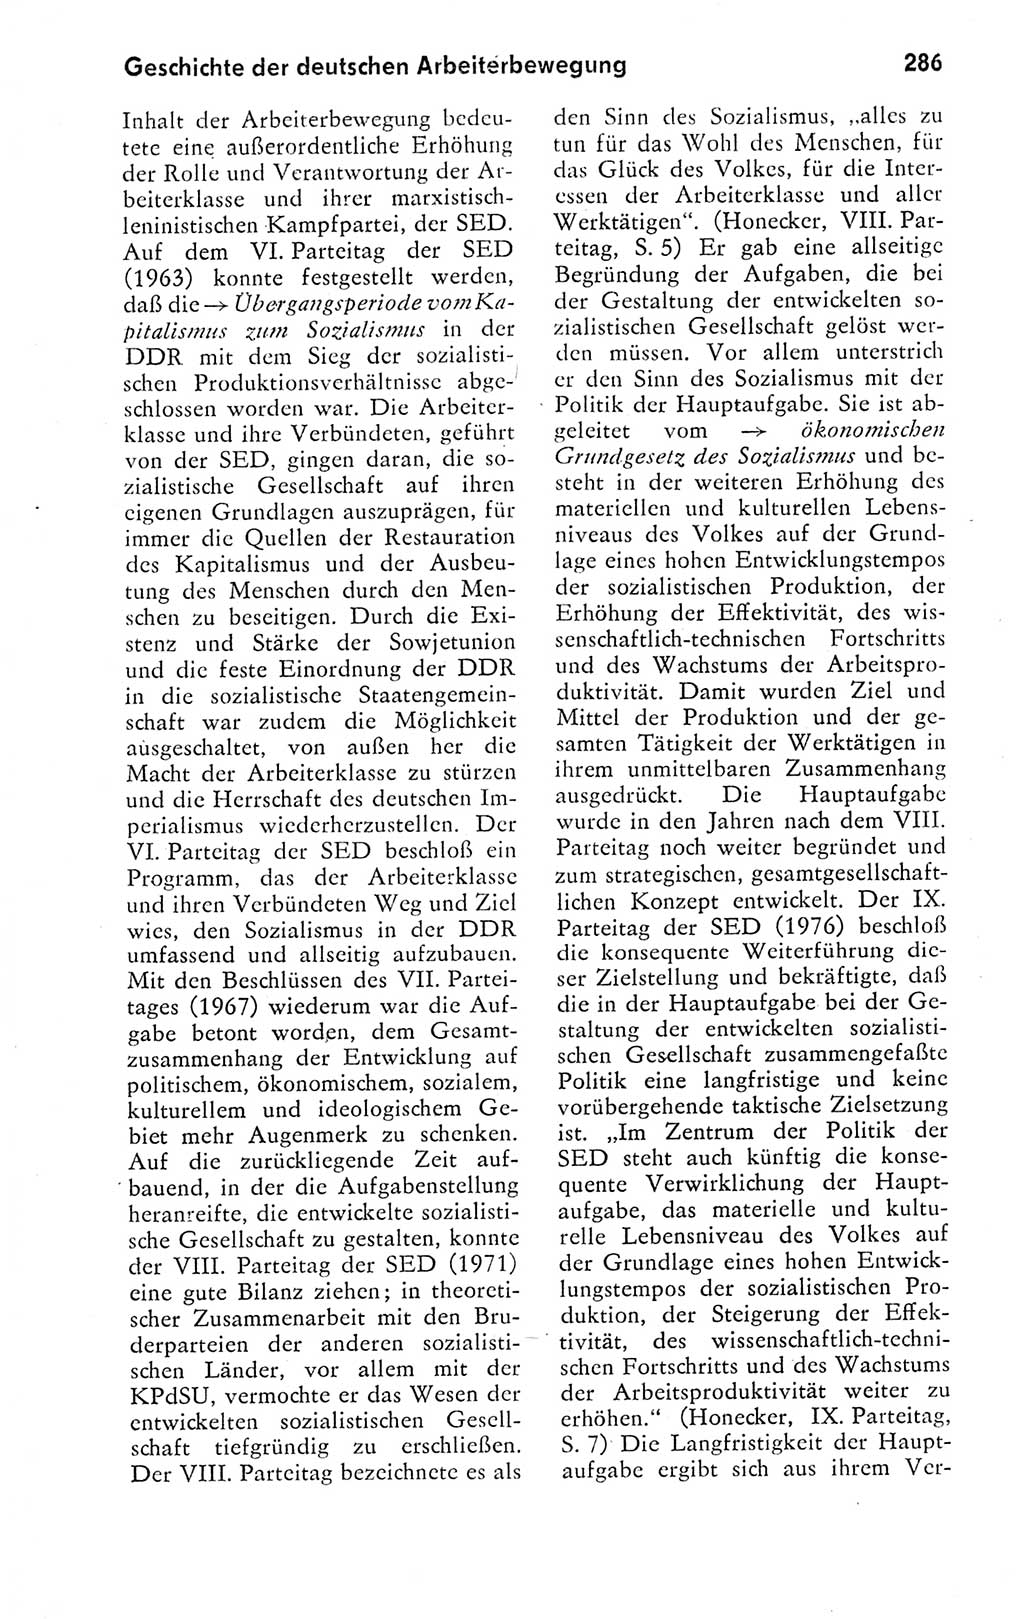 Kleines politisches Wörterbuch [Deutsche Demokratische Republik (DDR)] 1978, Seite 286 (Kl. pol. Wb. DDR 1978, S. 286)